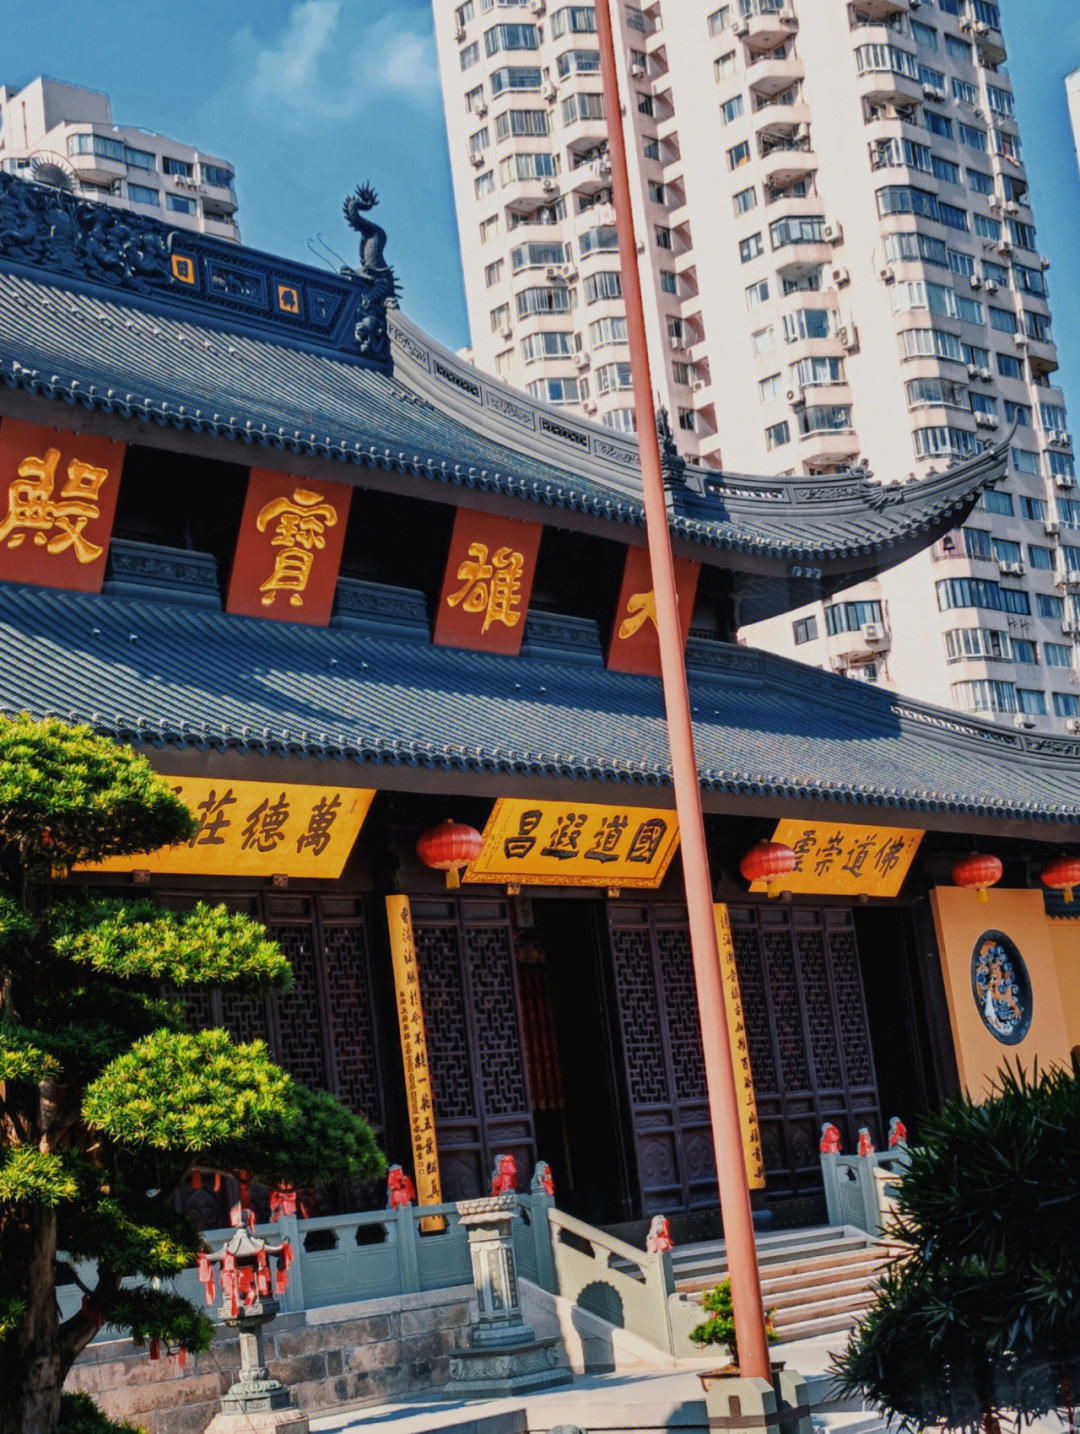 上海玉佛禅寺公众号图片